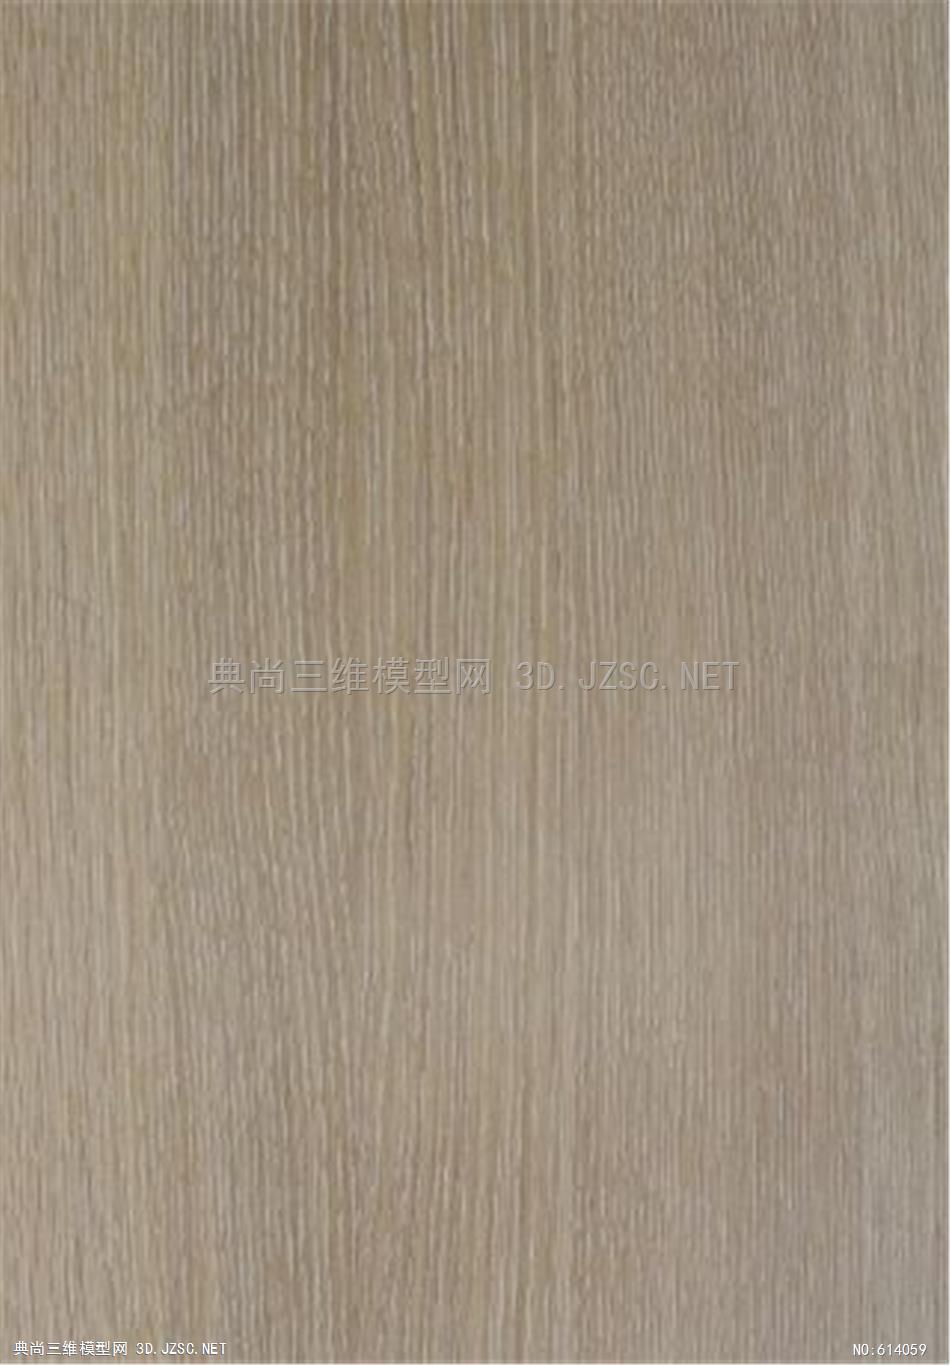 木饰面 木纹 木材  高清材质贴图 (226)